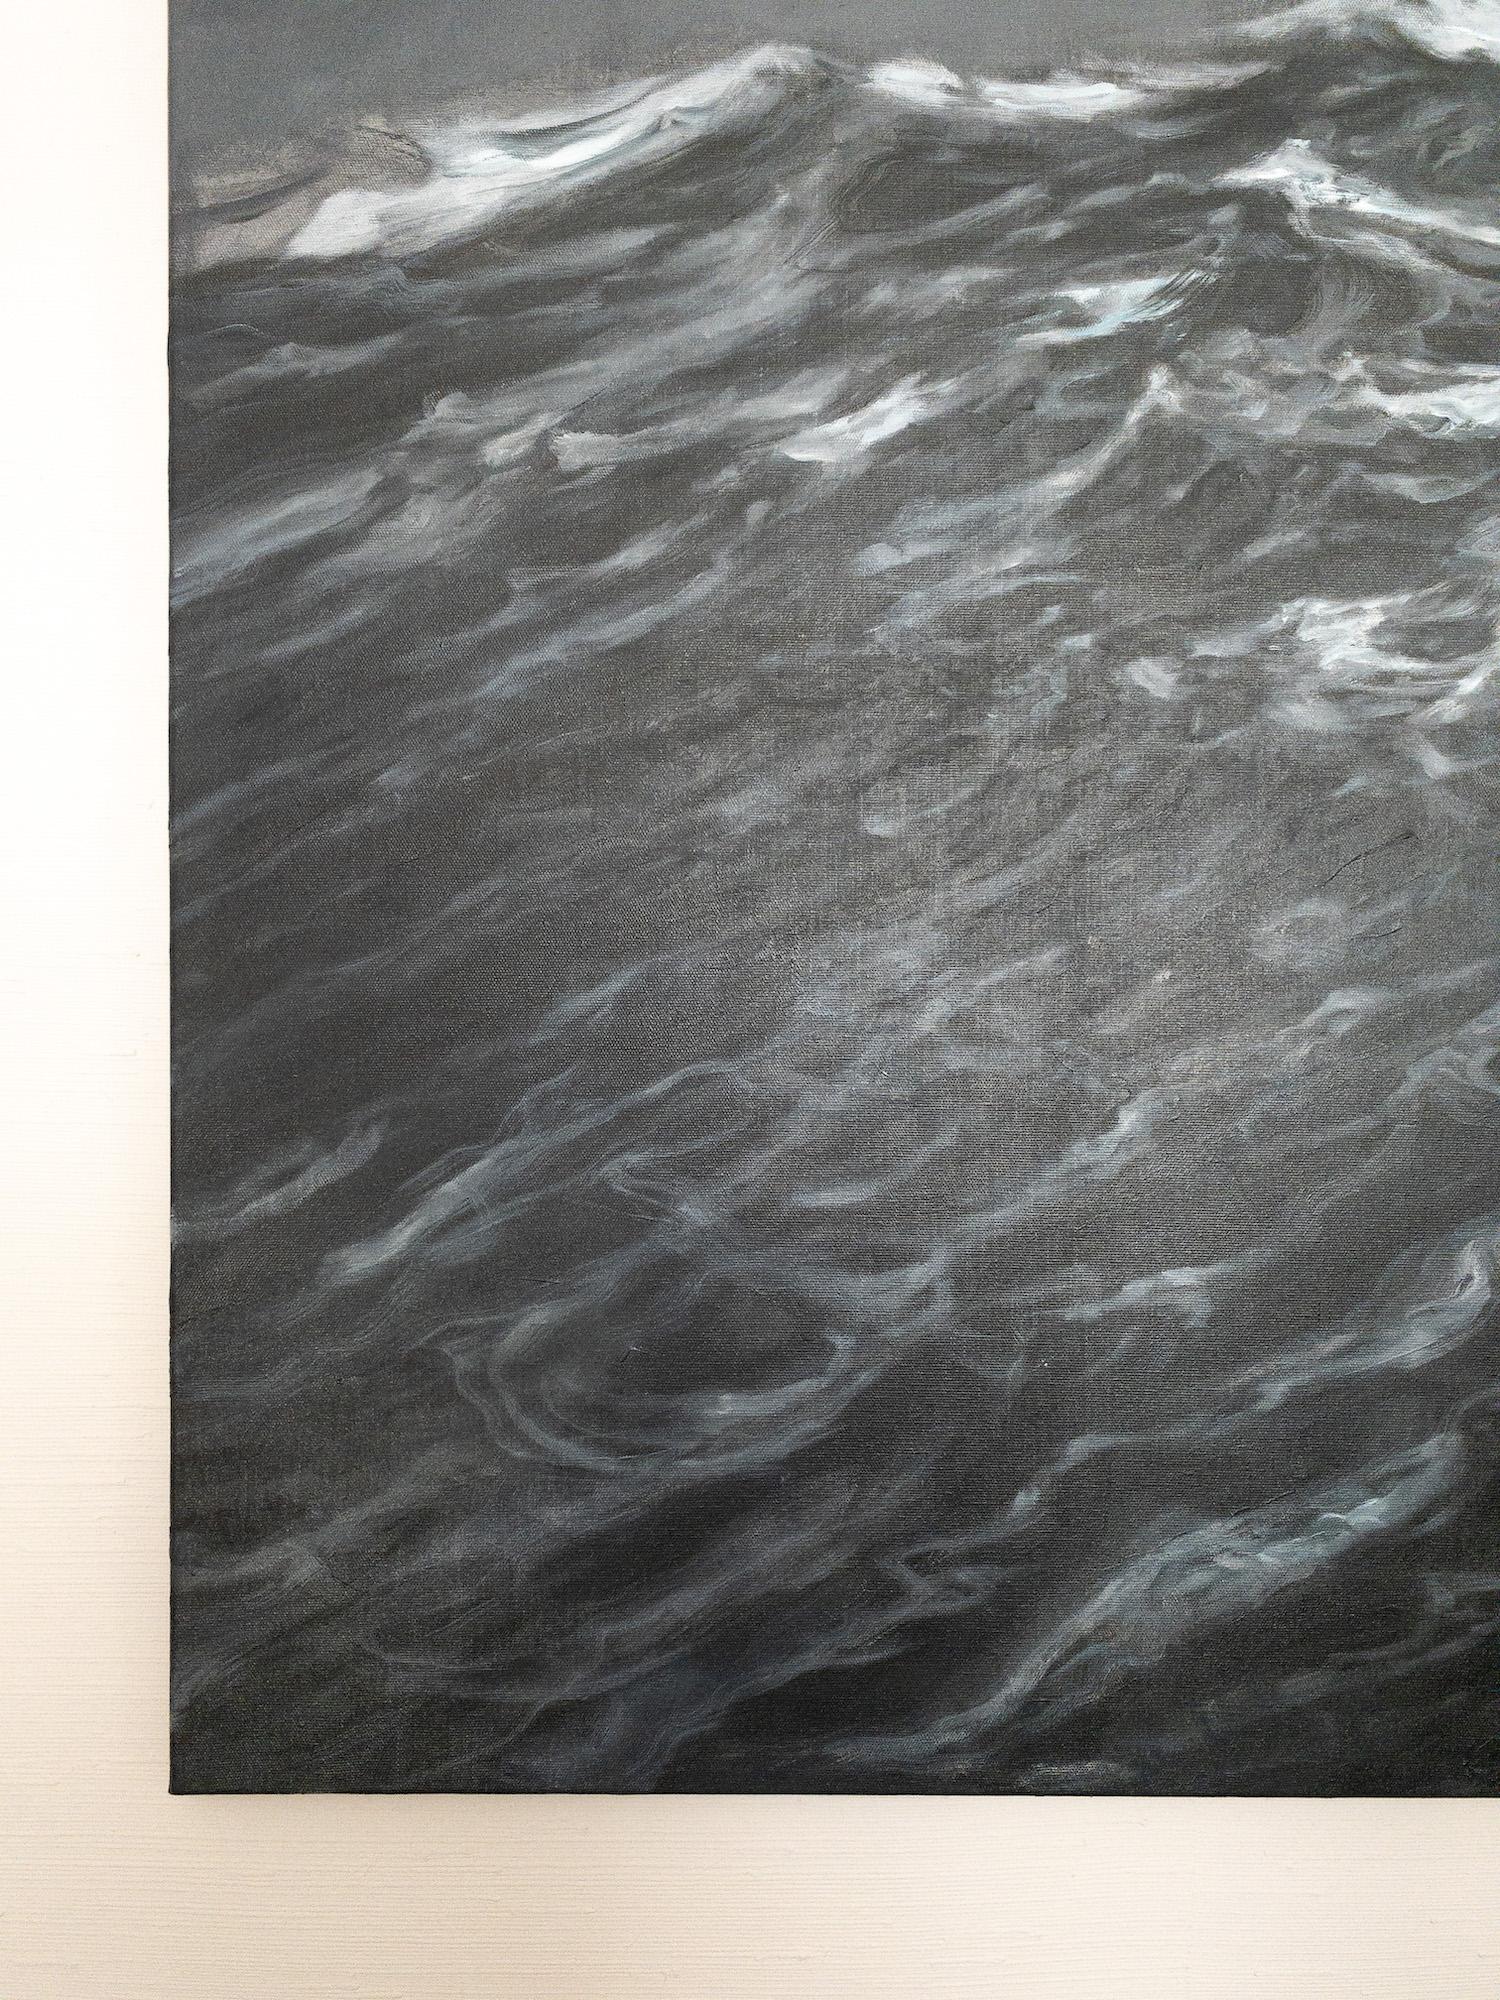 The Outburst by Franco Salas Borquez - Contemporary oil painting, seascape, wave For Sale 7